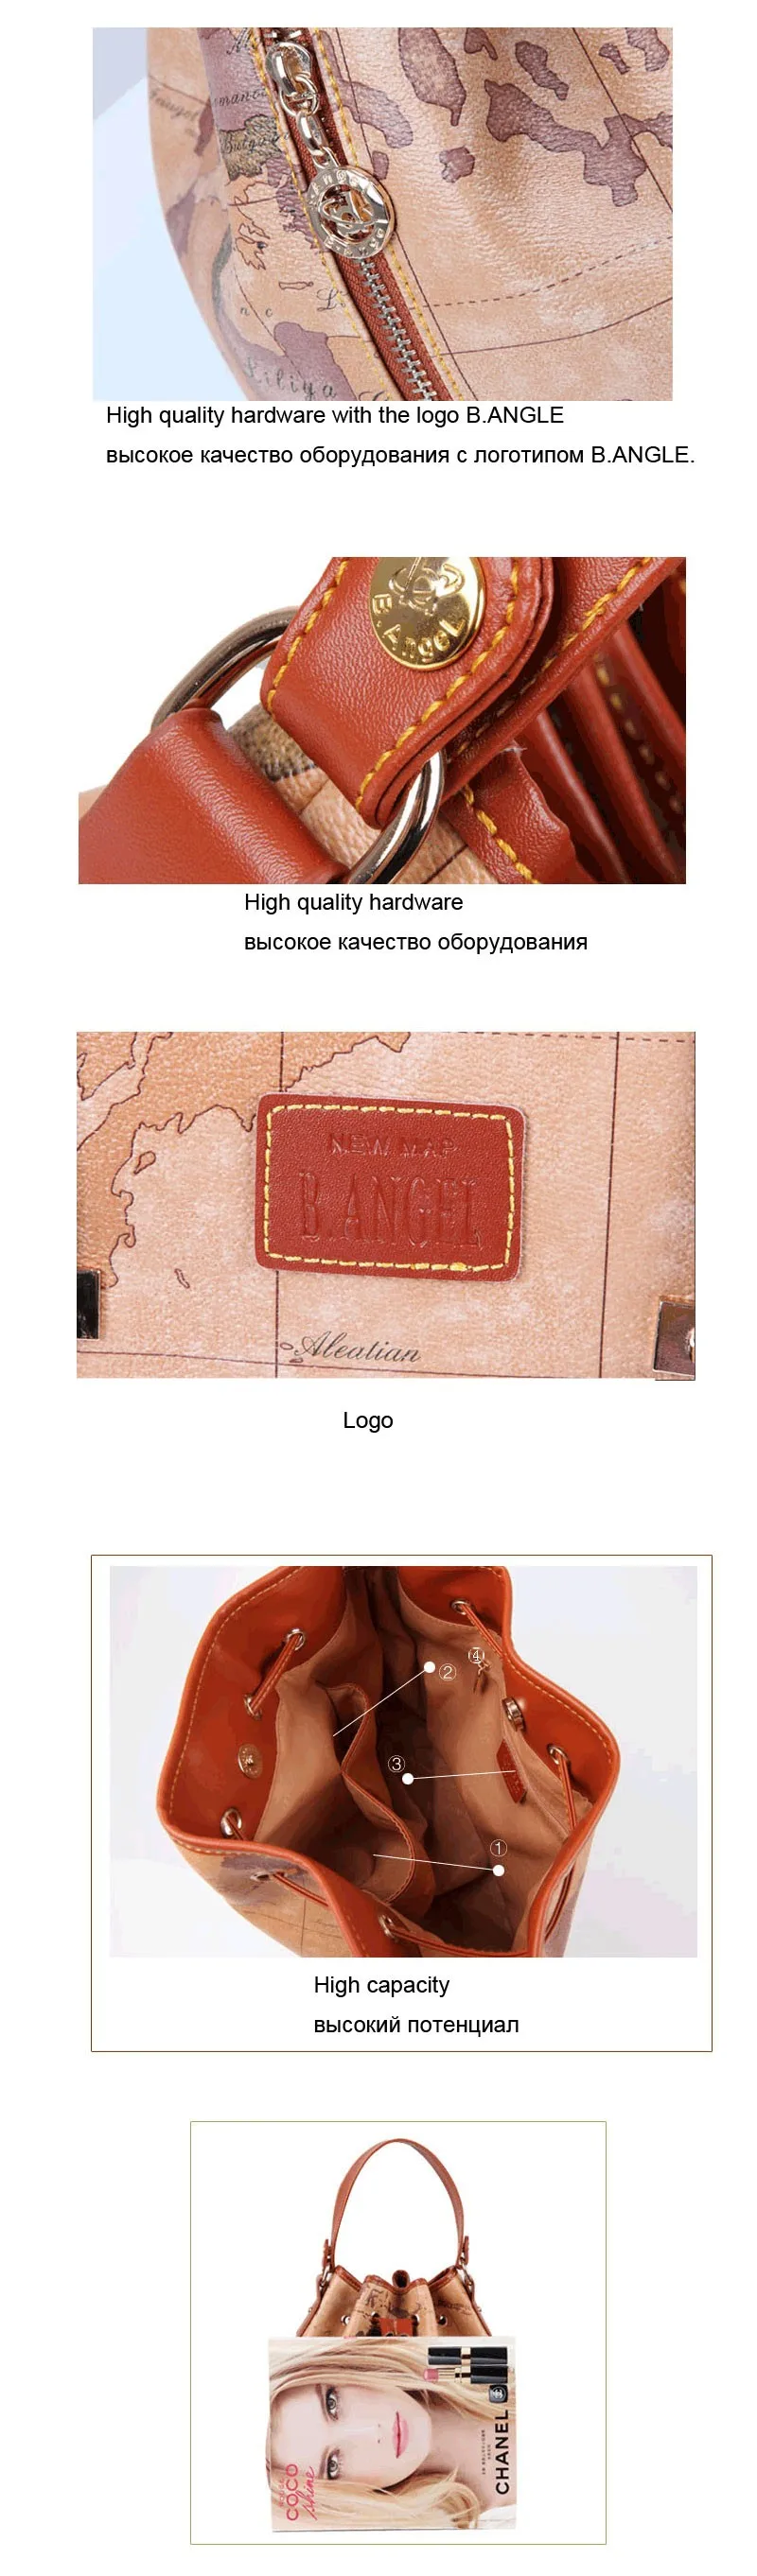 Звездные войны сообщение мода высокое качество женская сумка через плечо Бочкообразная карта мира из ПВХ